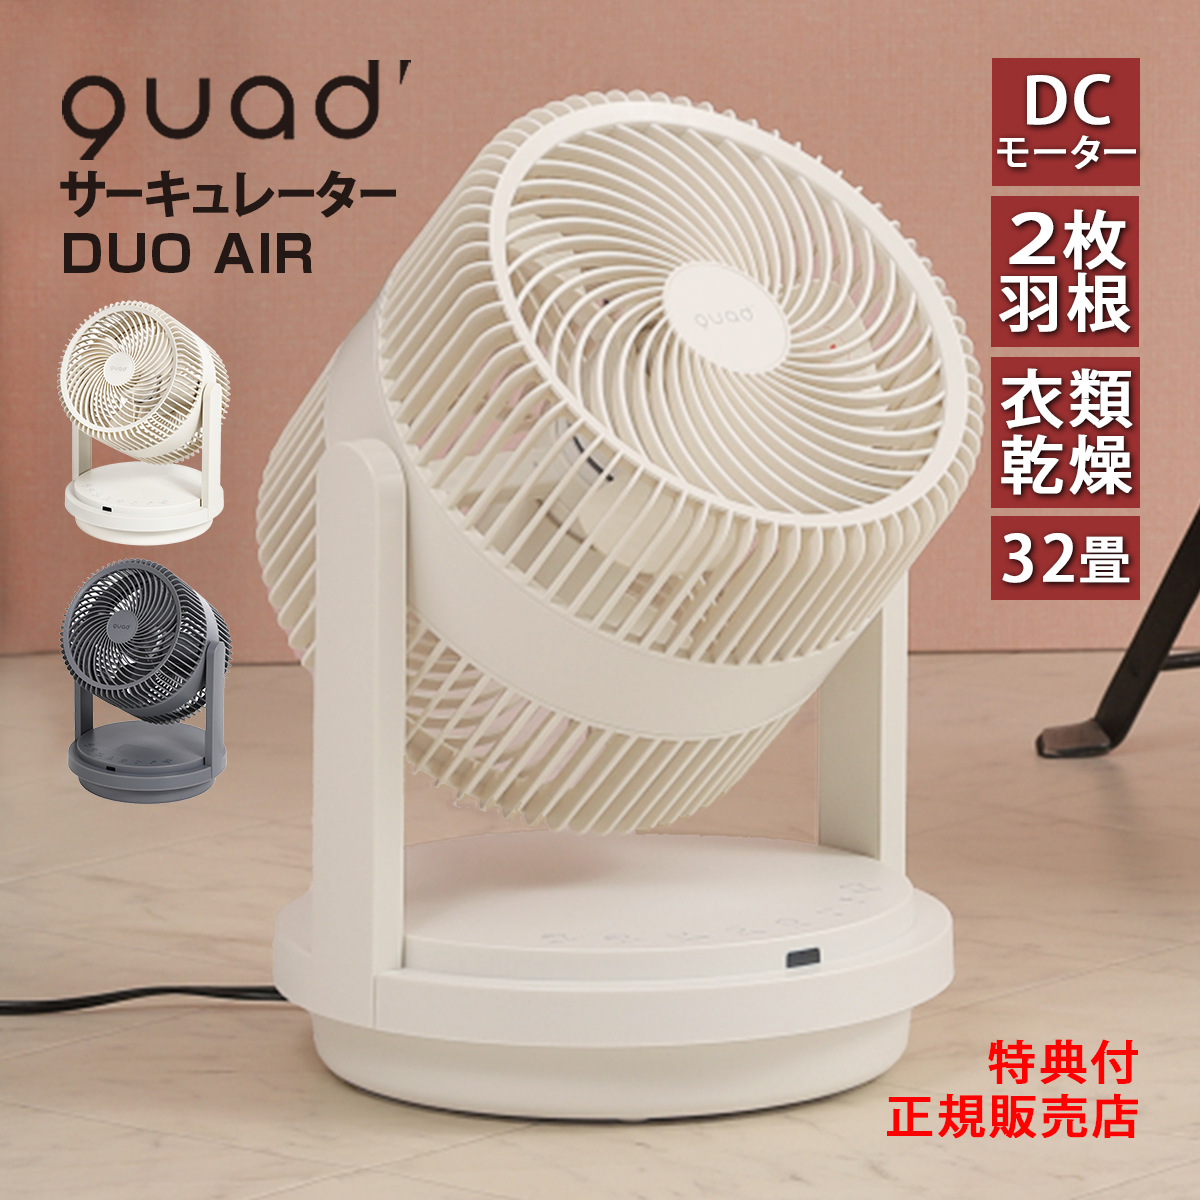 おしゃれ QUADS 3D DCサーキュレーター 32畳対応 デュオエア DUOAIR QS303IV アイボリー